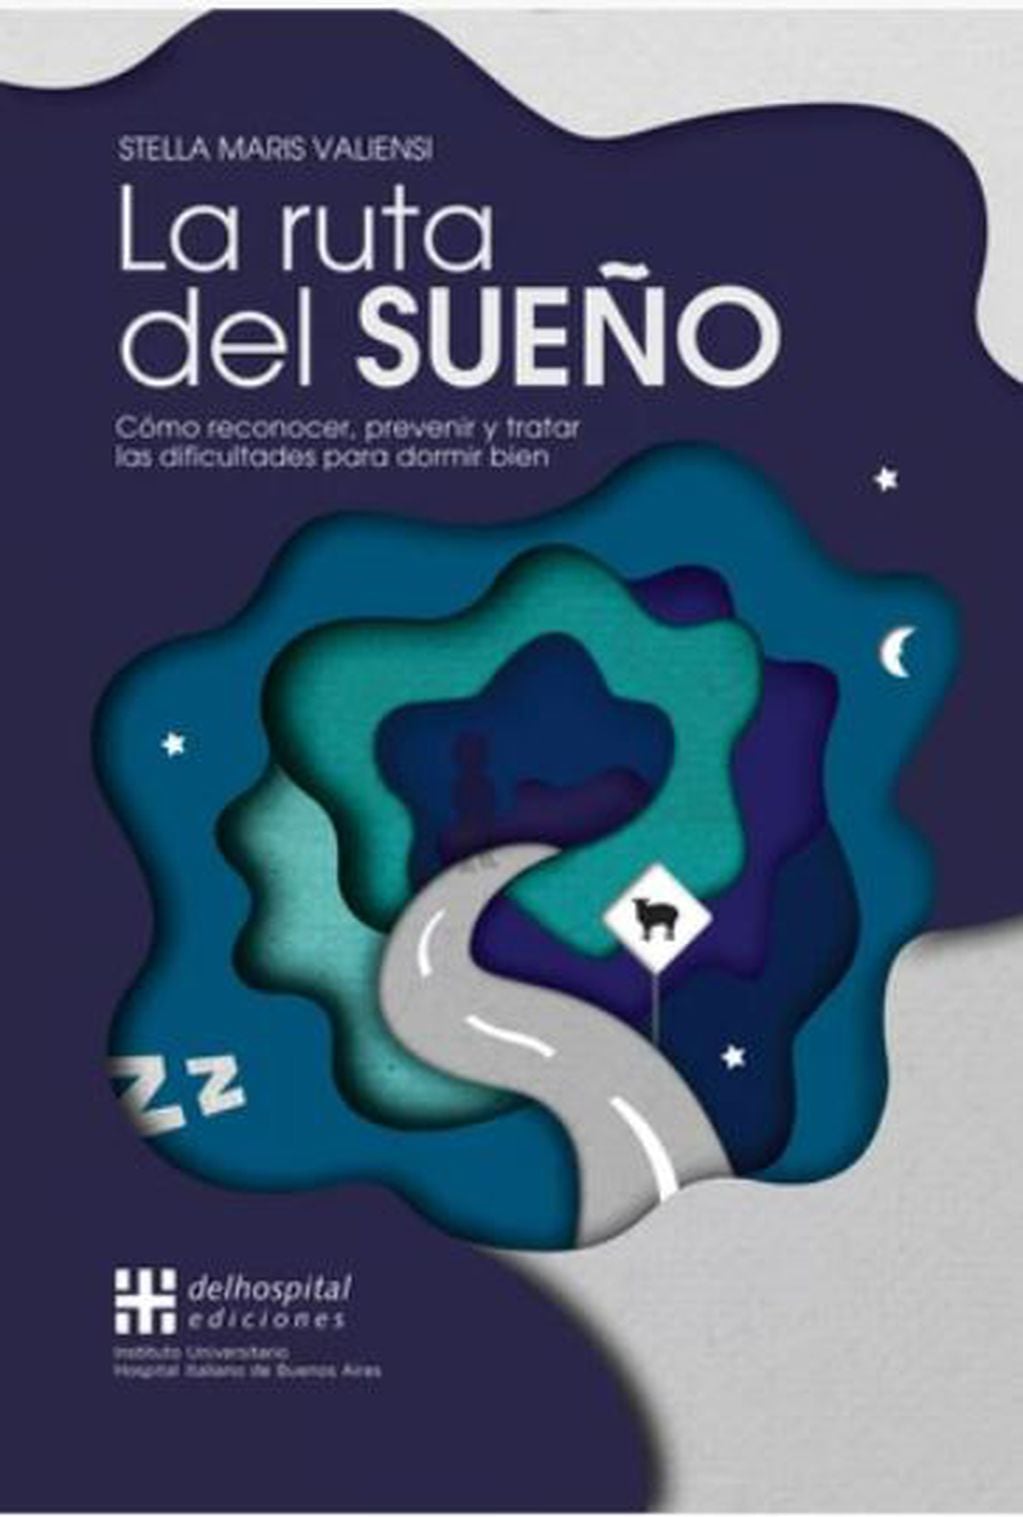 El reciente libro "La ruta del sueño", de la neuróloga Stella Maris Valiensi, aporta valiosos tips para prevenir trastornos del sueño y mantener una rutina de descanso saludable. FOTO: 123RF